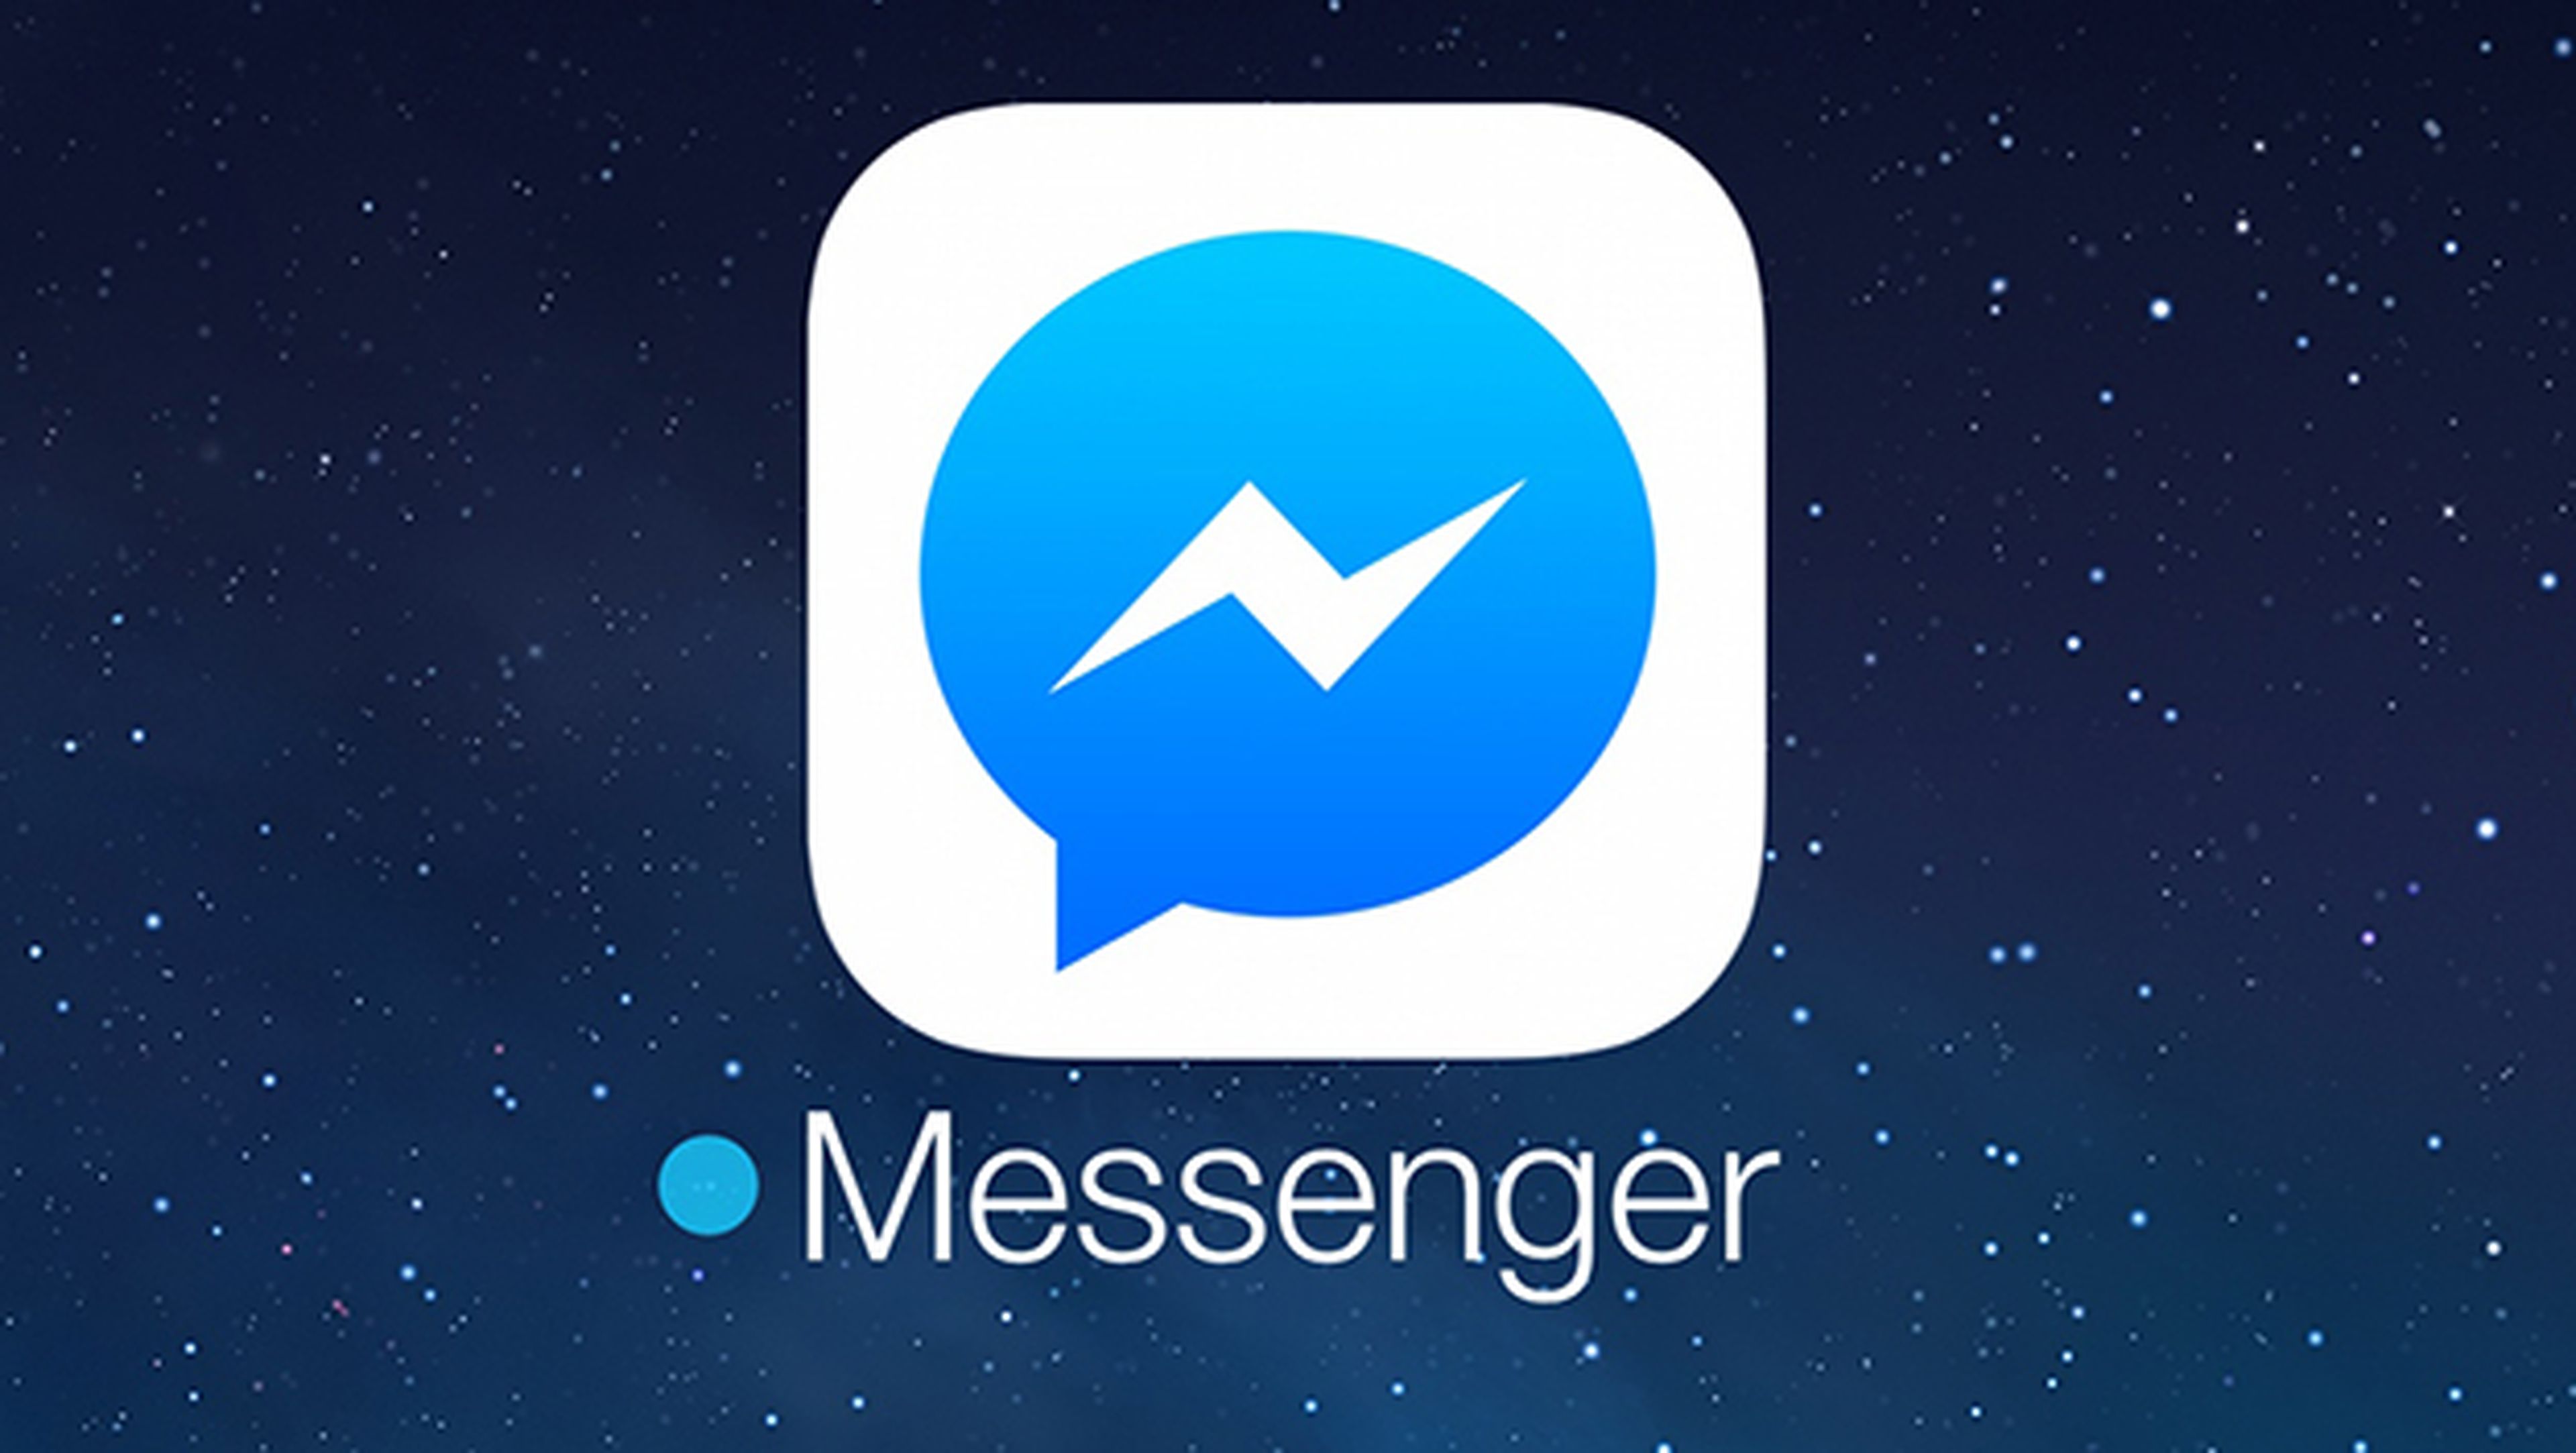 Мессенджер это кратко. Facebook Messenger. Фейсбук мессенджер. M.Facebook. Логотип Messenger.